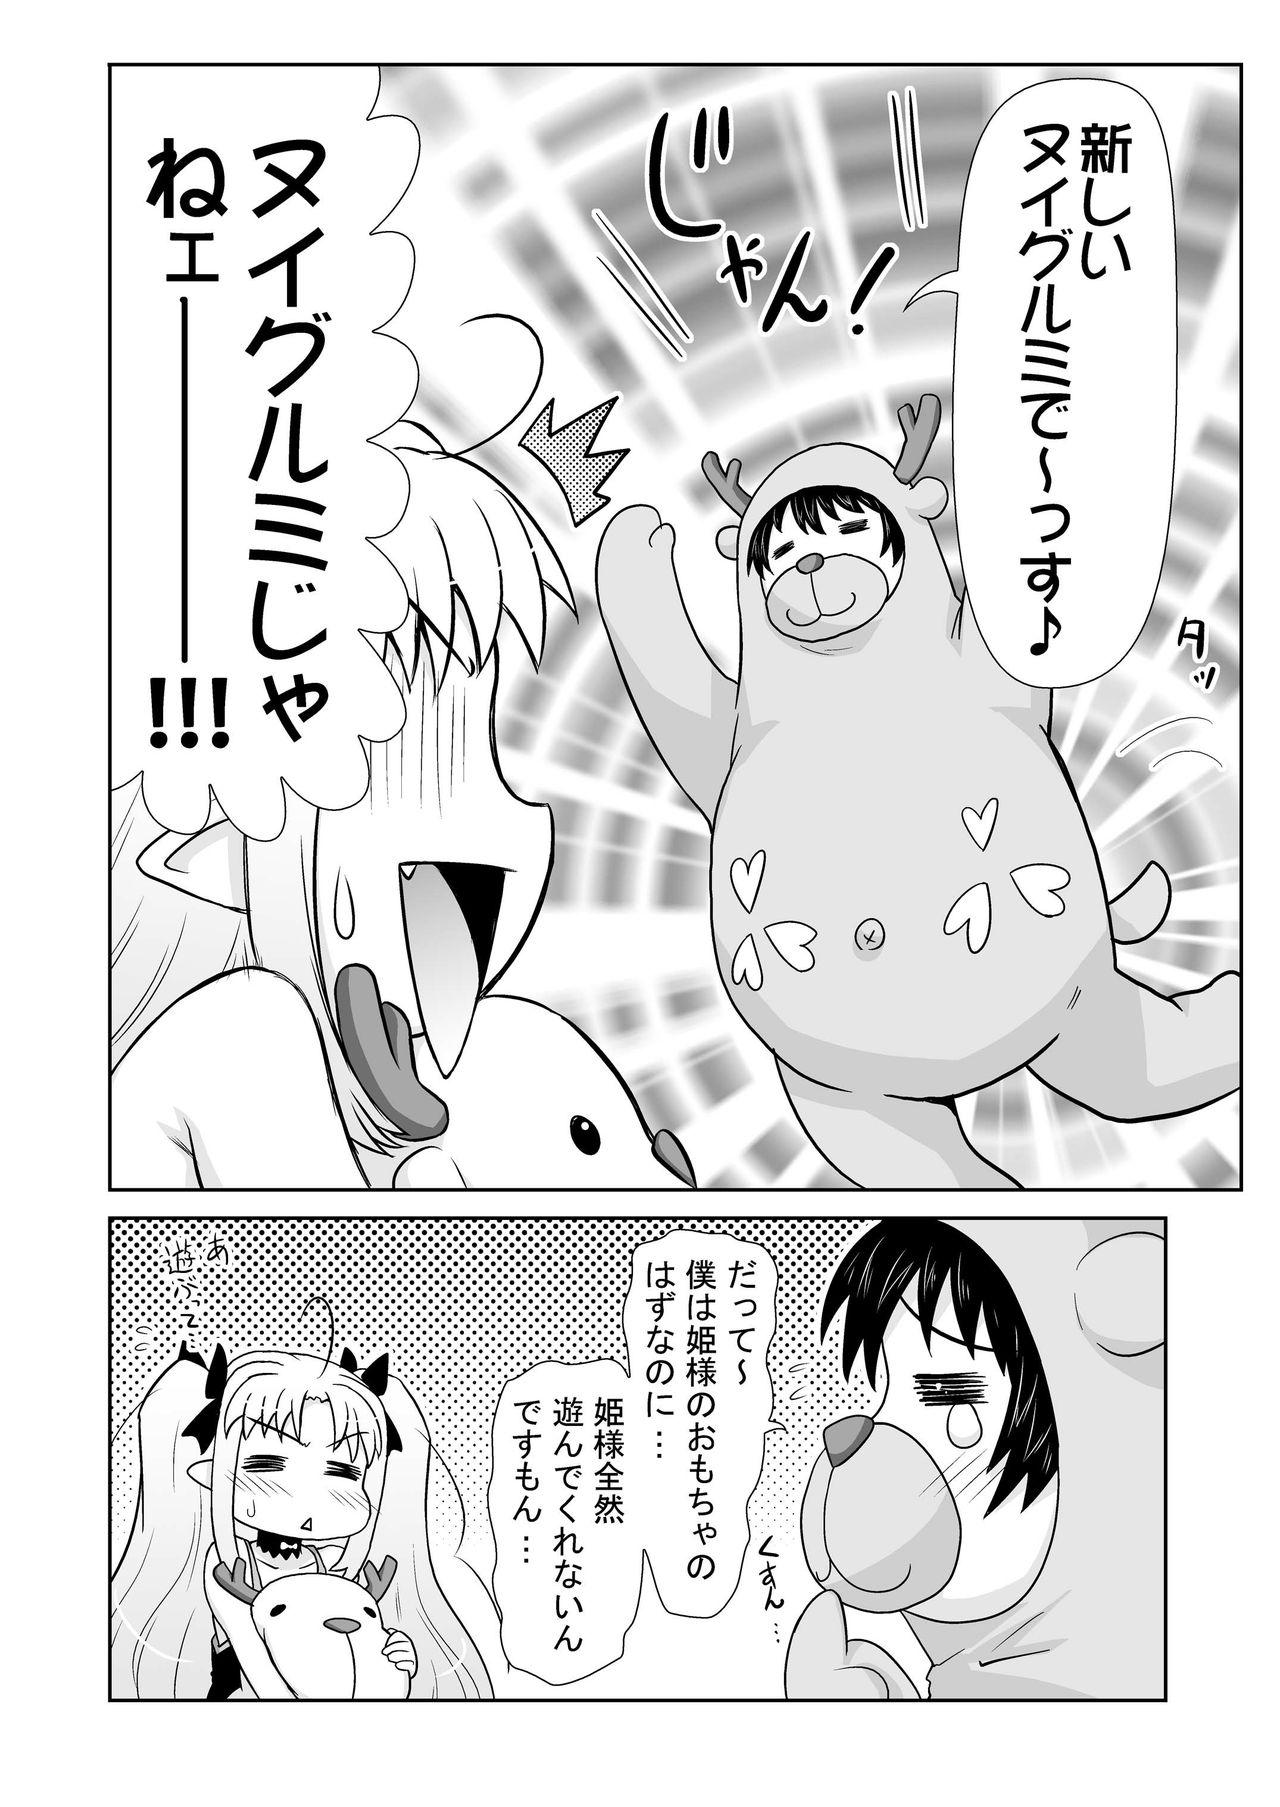 Super Boku wa Lotte-sama no Omocha desu ga, Nani ka? - Lotte no omocha Rica - Page 6